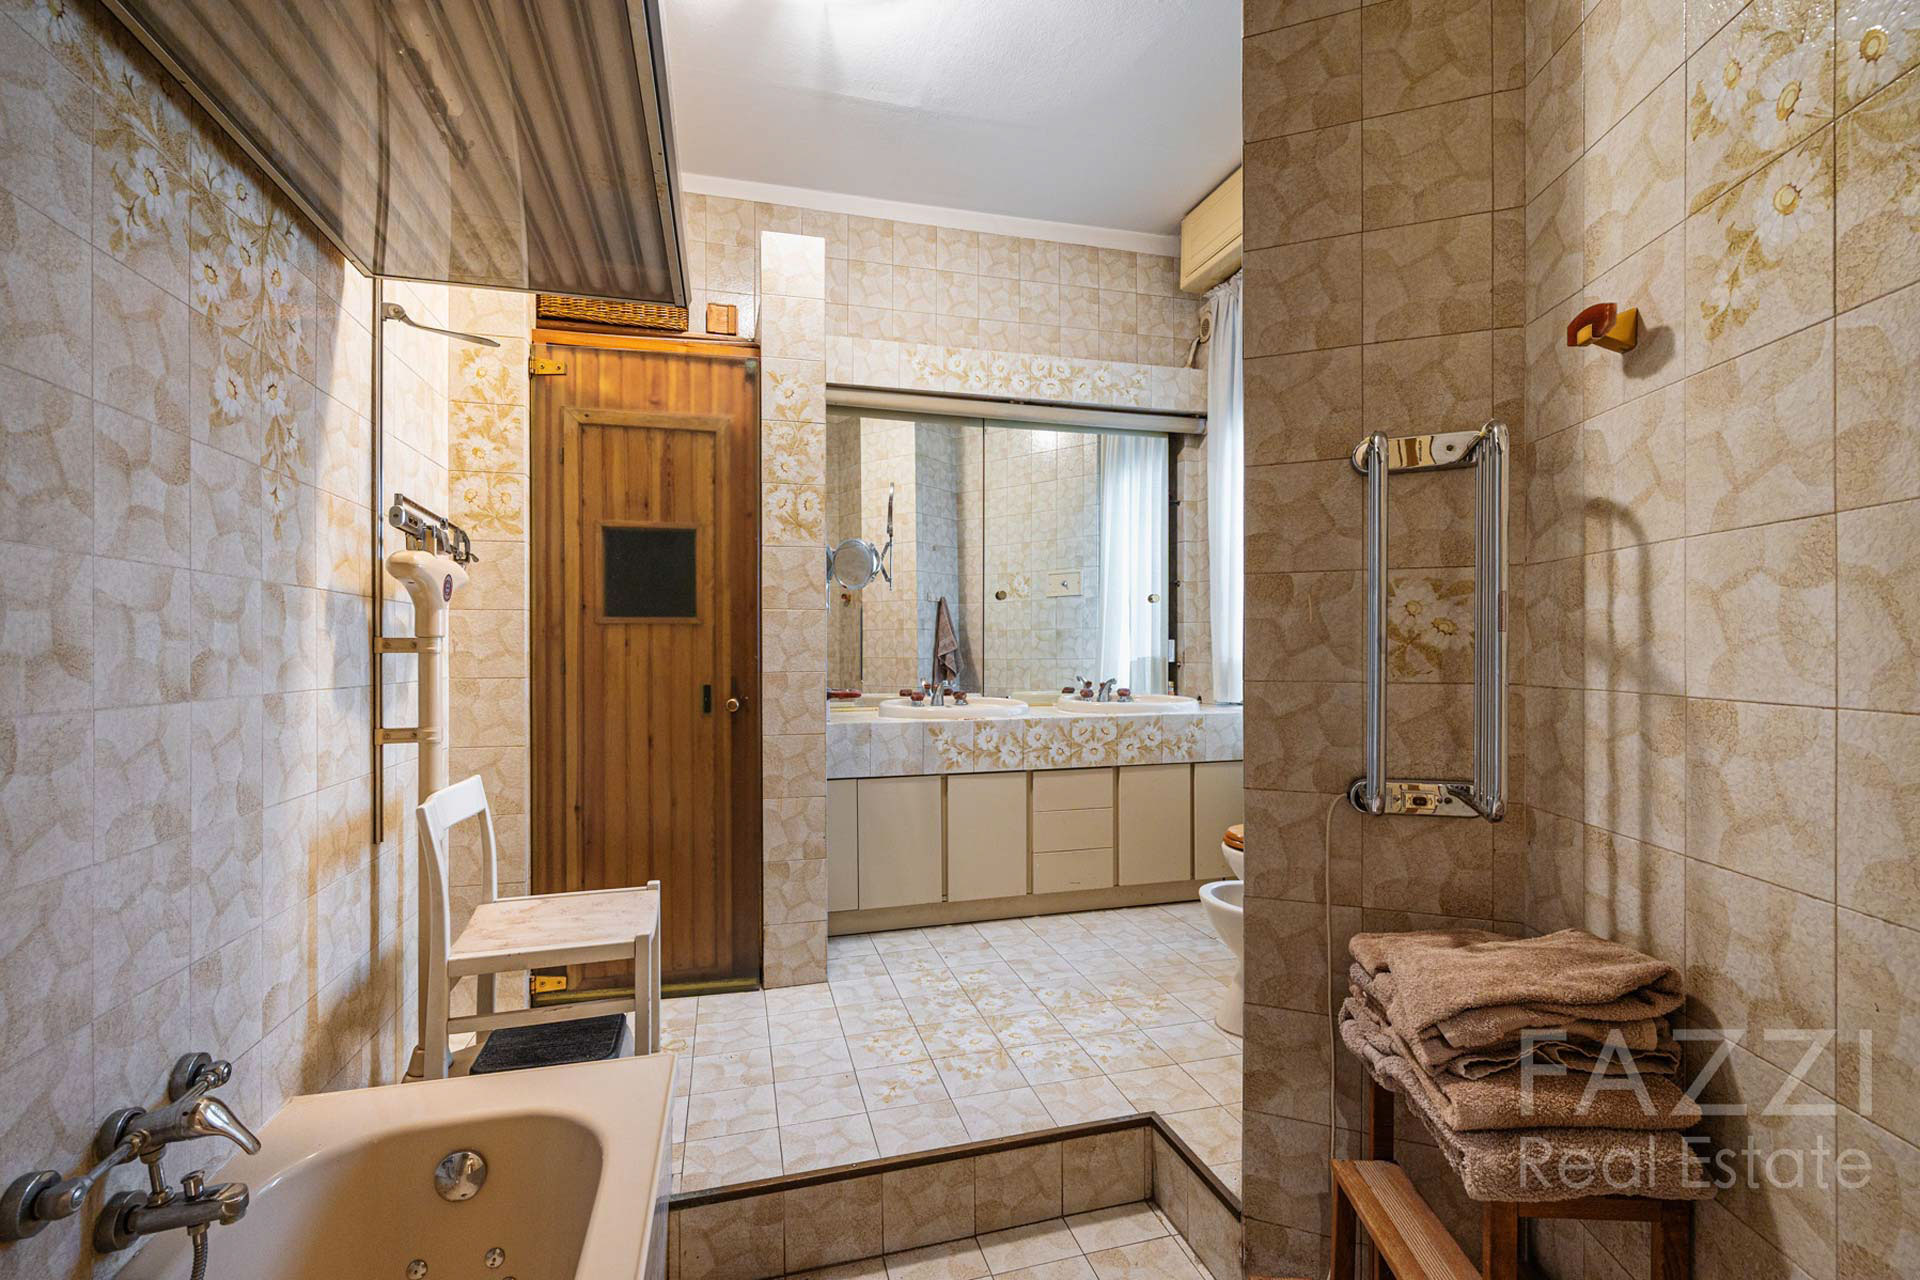 affitto appartamento via colonnetta  milano bagno  fazzi real estate